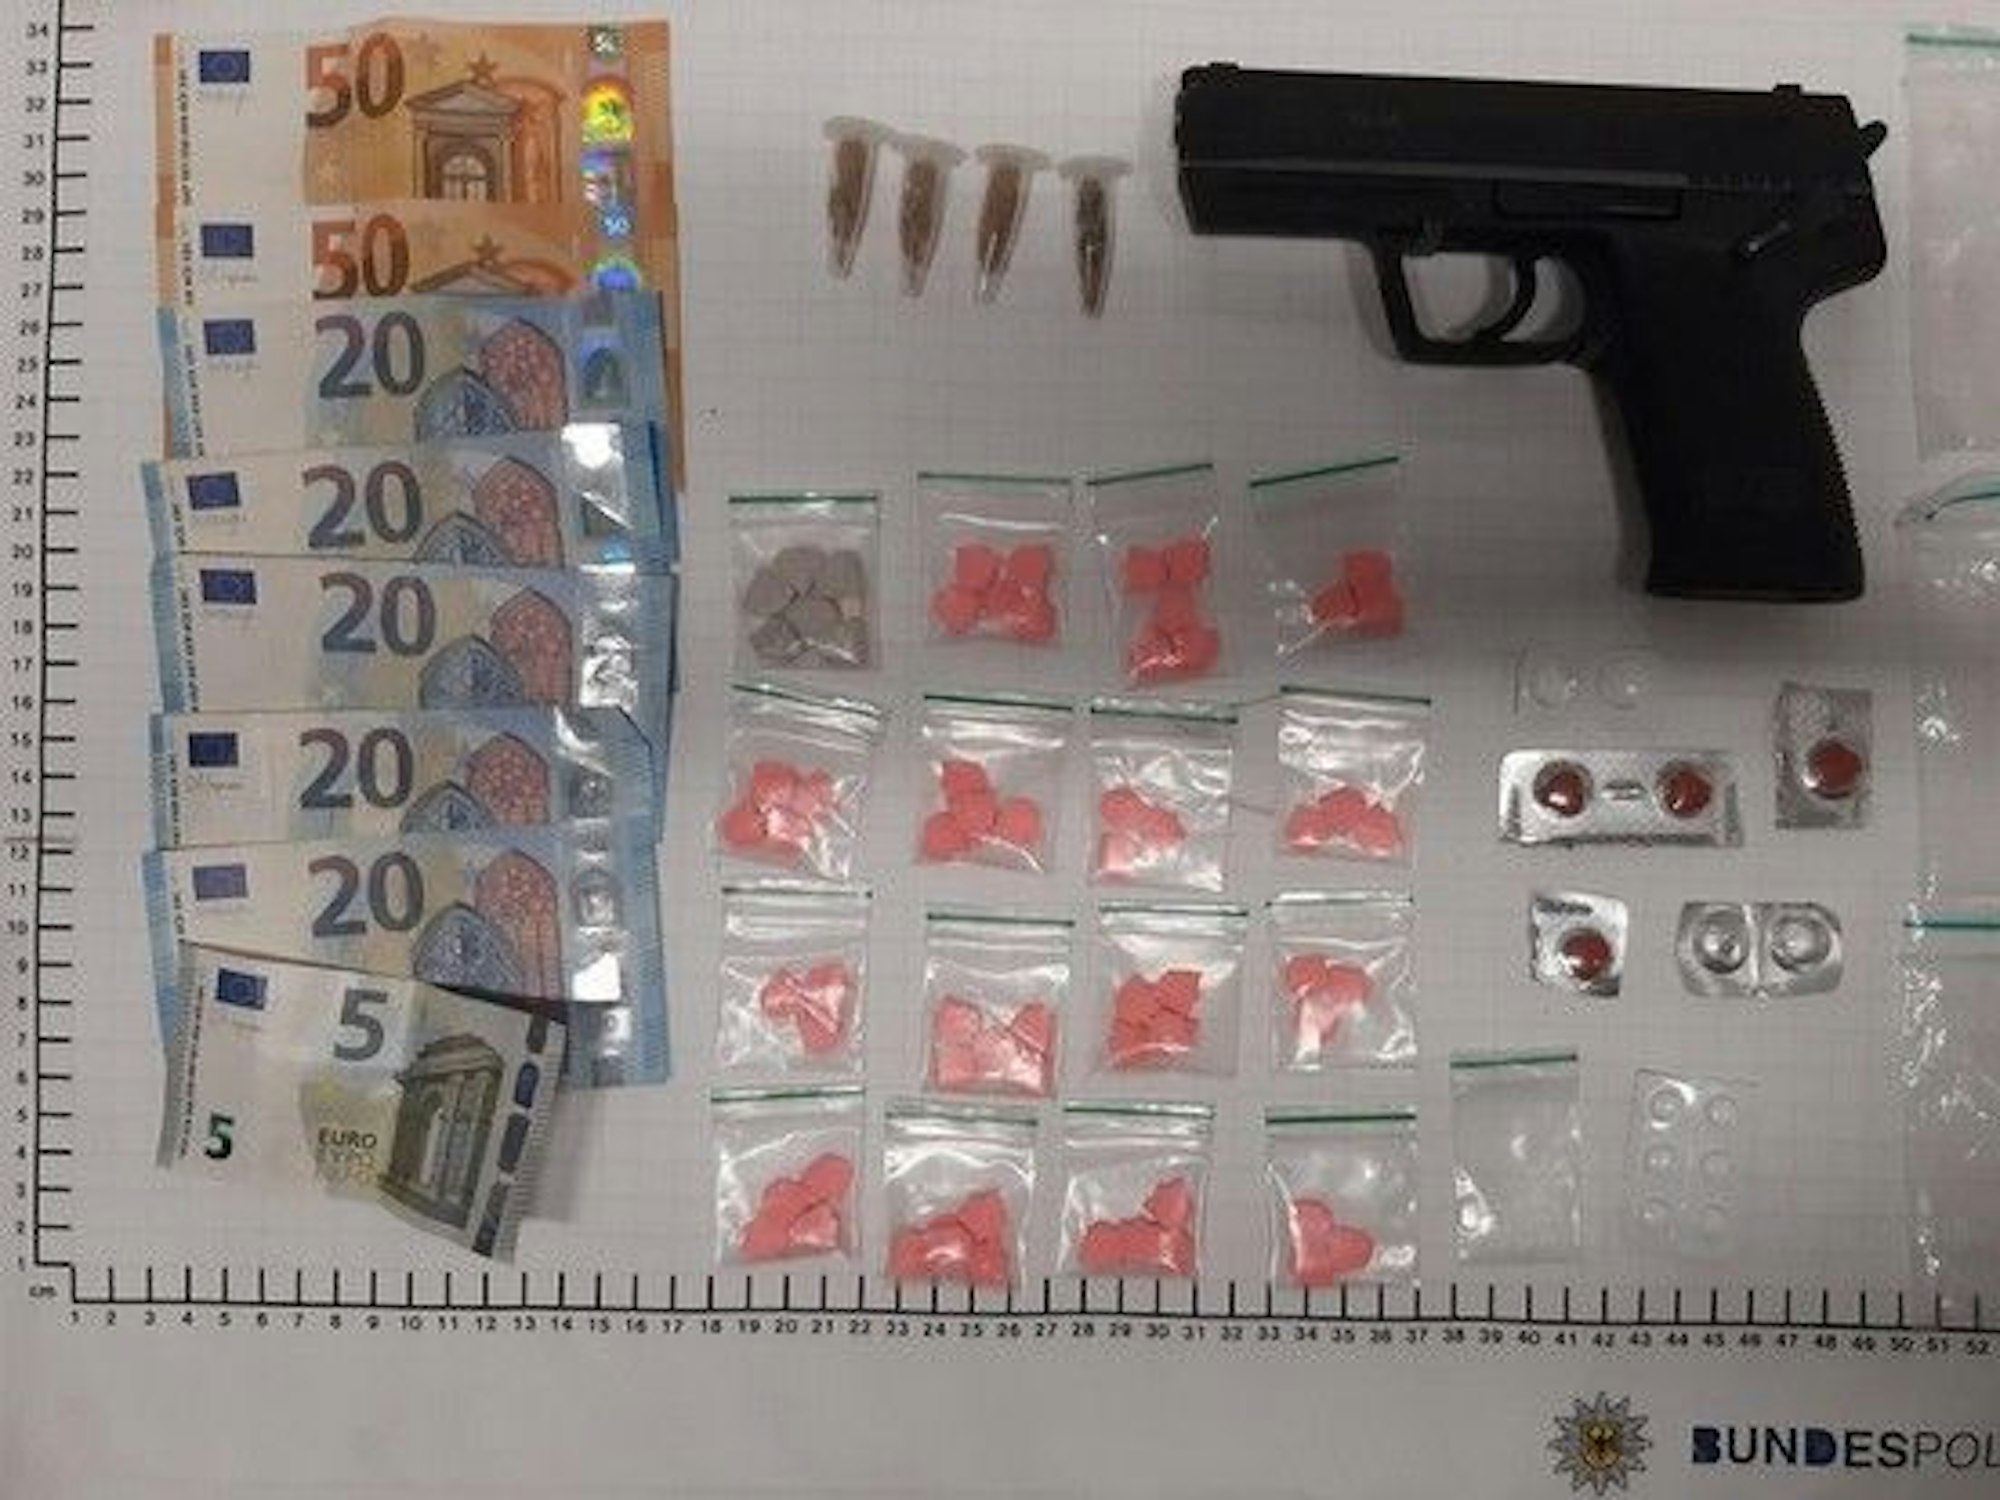 Bargeld, Tüten mit Drogen und eine Pistole liegen auf einem weißen Tisch.